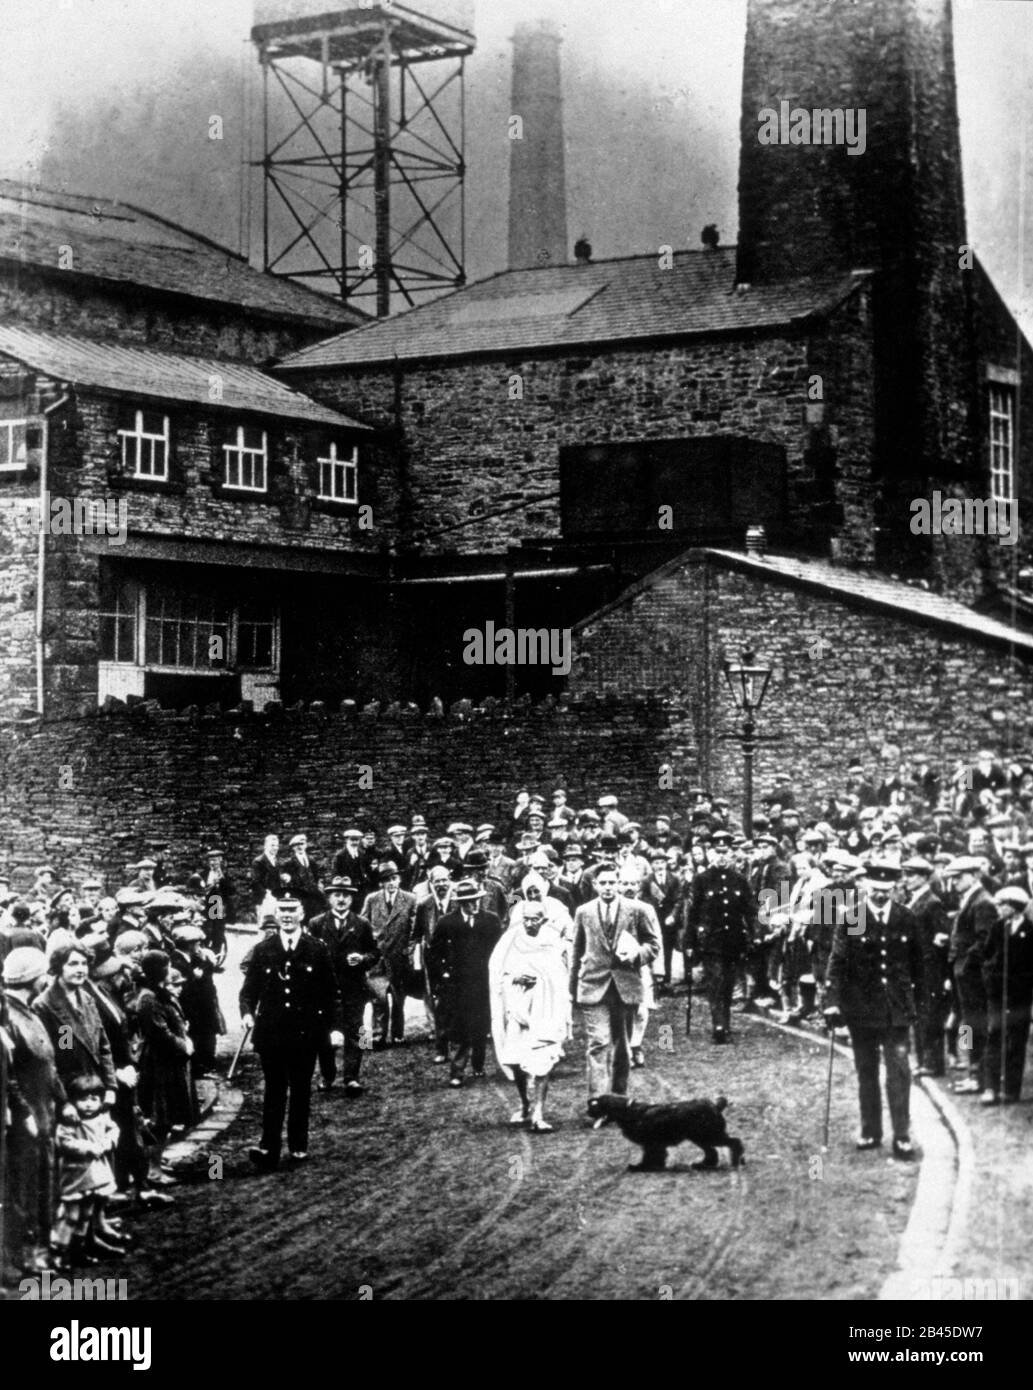 Mahatma Gandhi visite des usines de textile à darwin Lancashire au Royaume-Uni Angleterre, 1931 Banque D'Images